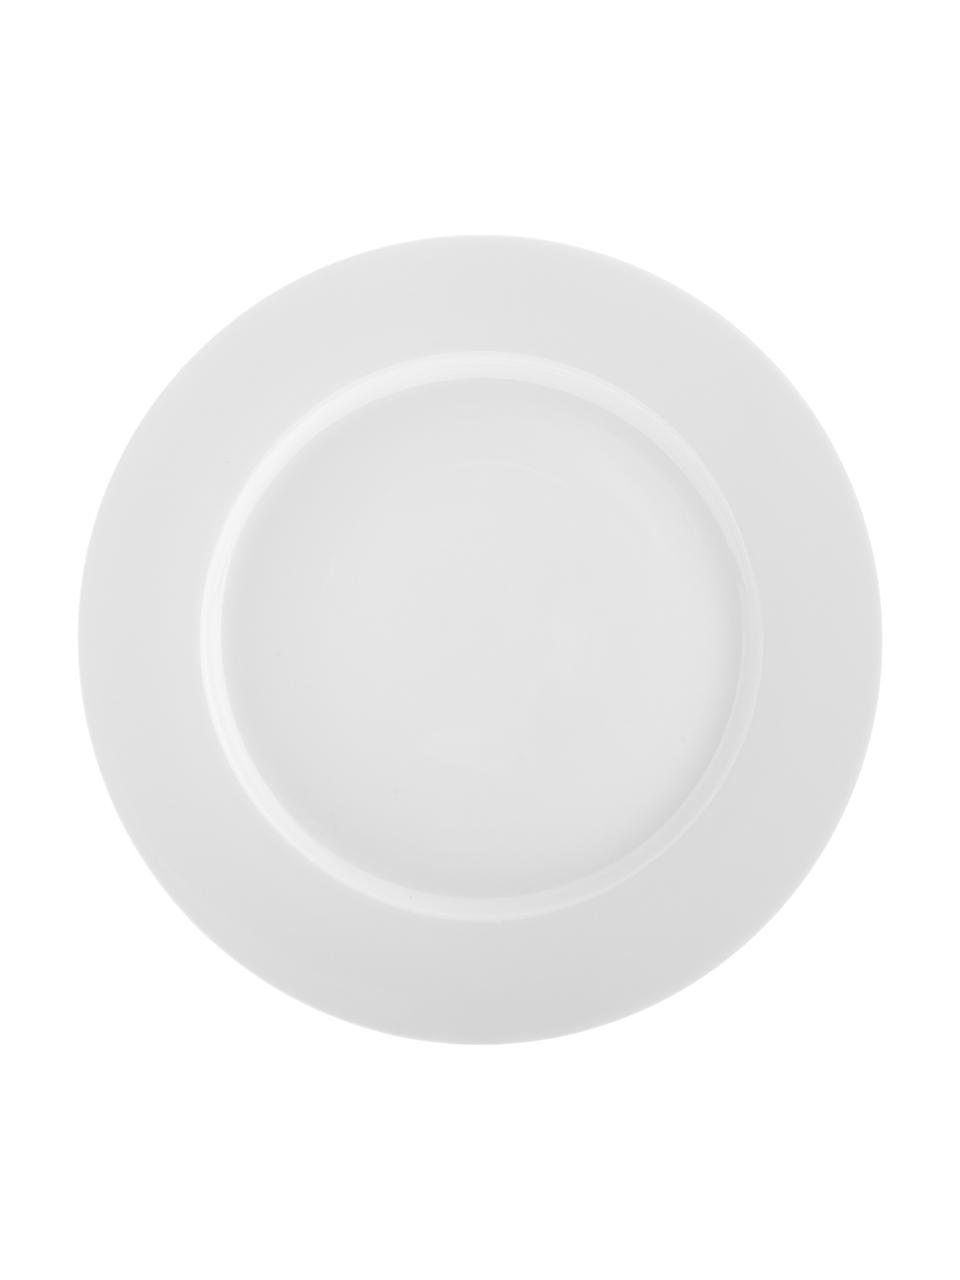 Porzellan-Frühstücksteller Delight Classic in Weiß, 2 Stück, Porzellan, Weiß, Ø 23 cm